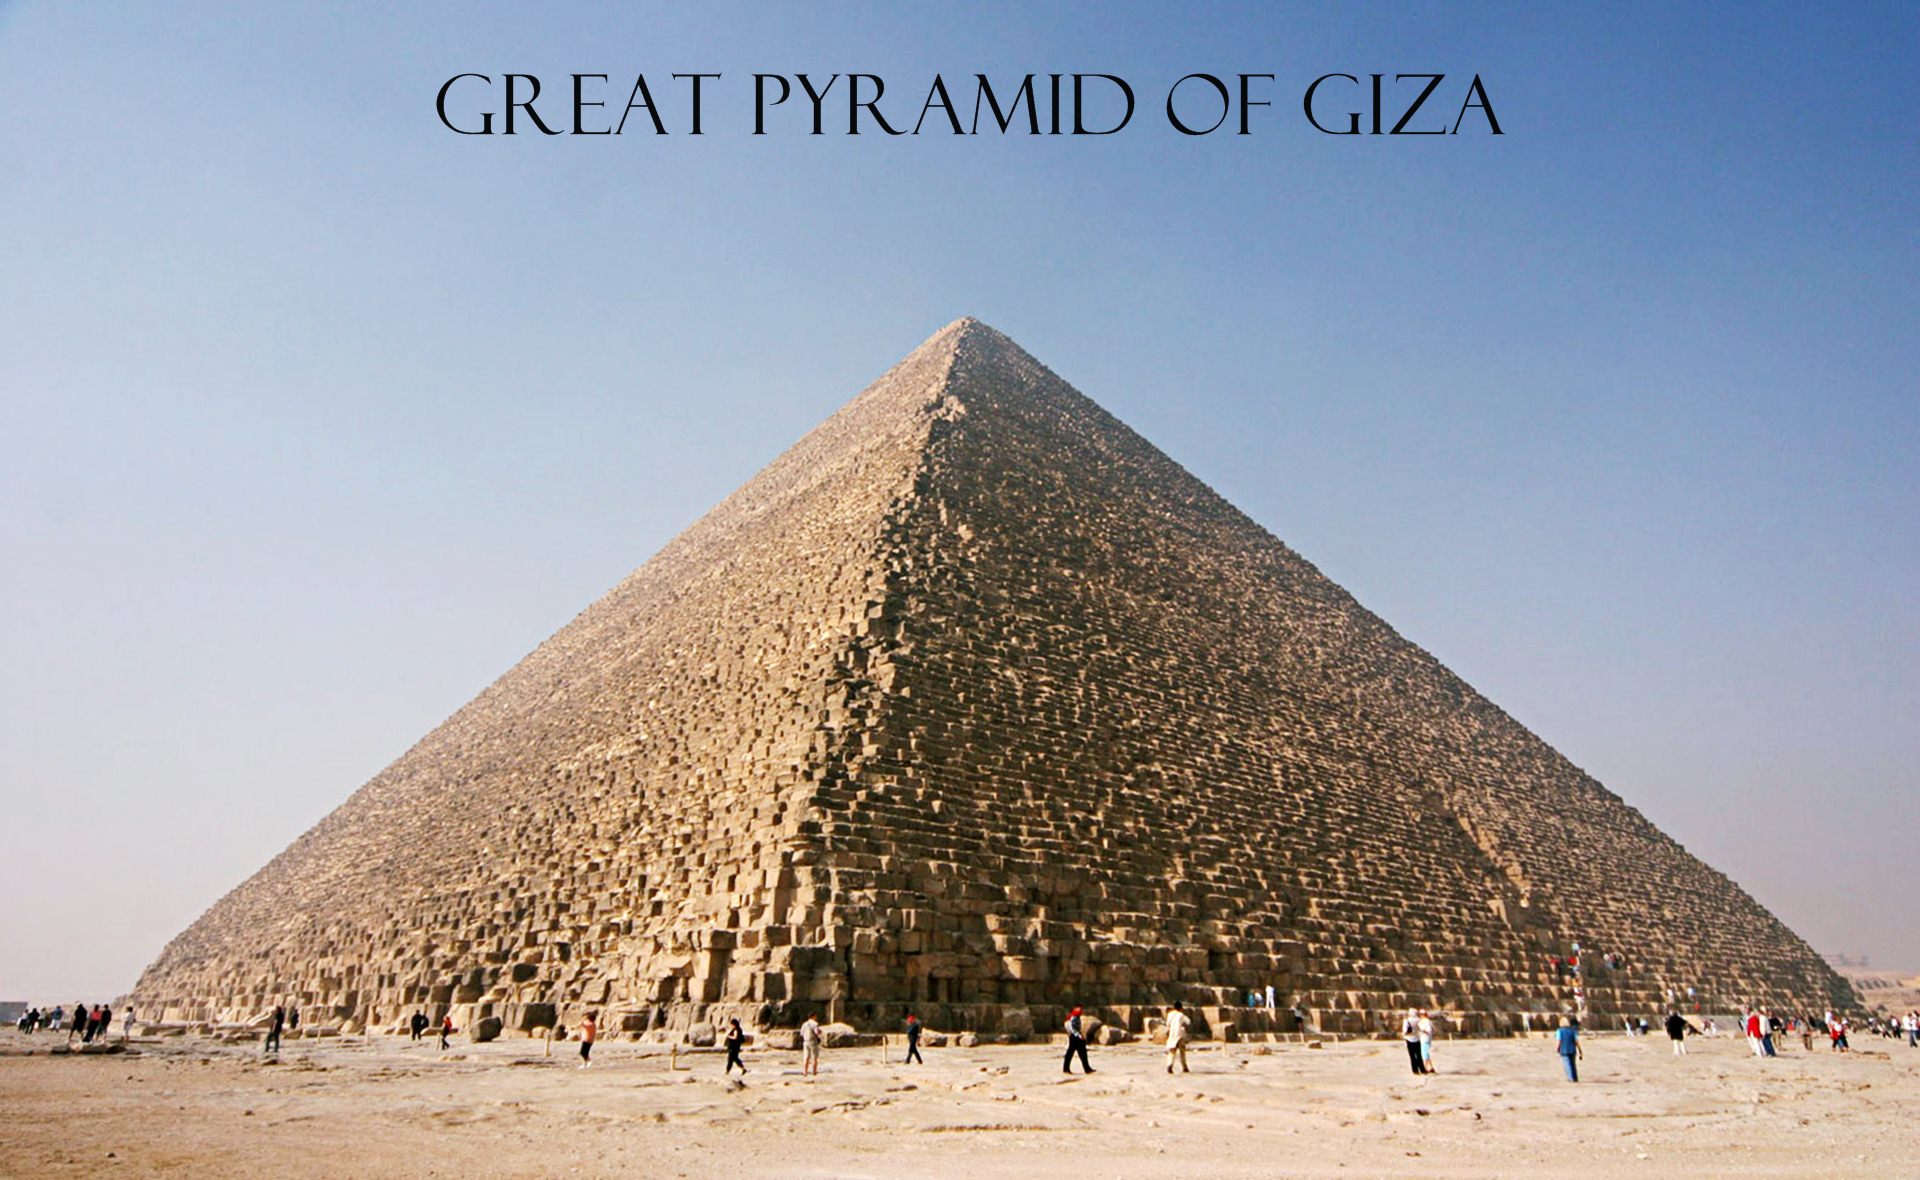 Hd Wallpapers Great Pyramid At Giza Egypt 1920 X 1080 189 Kb Jpeg HD